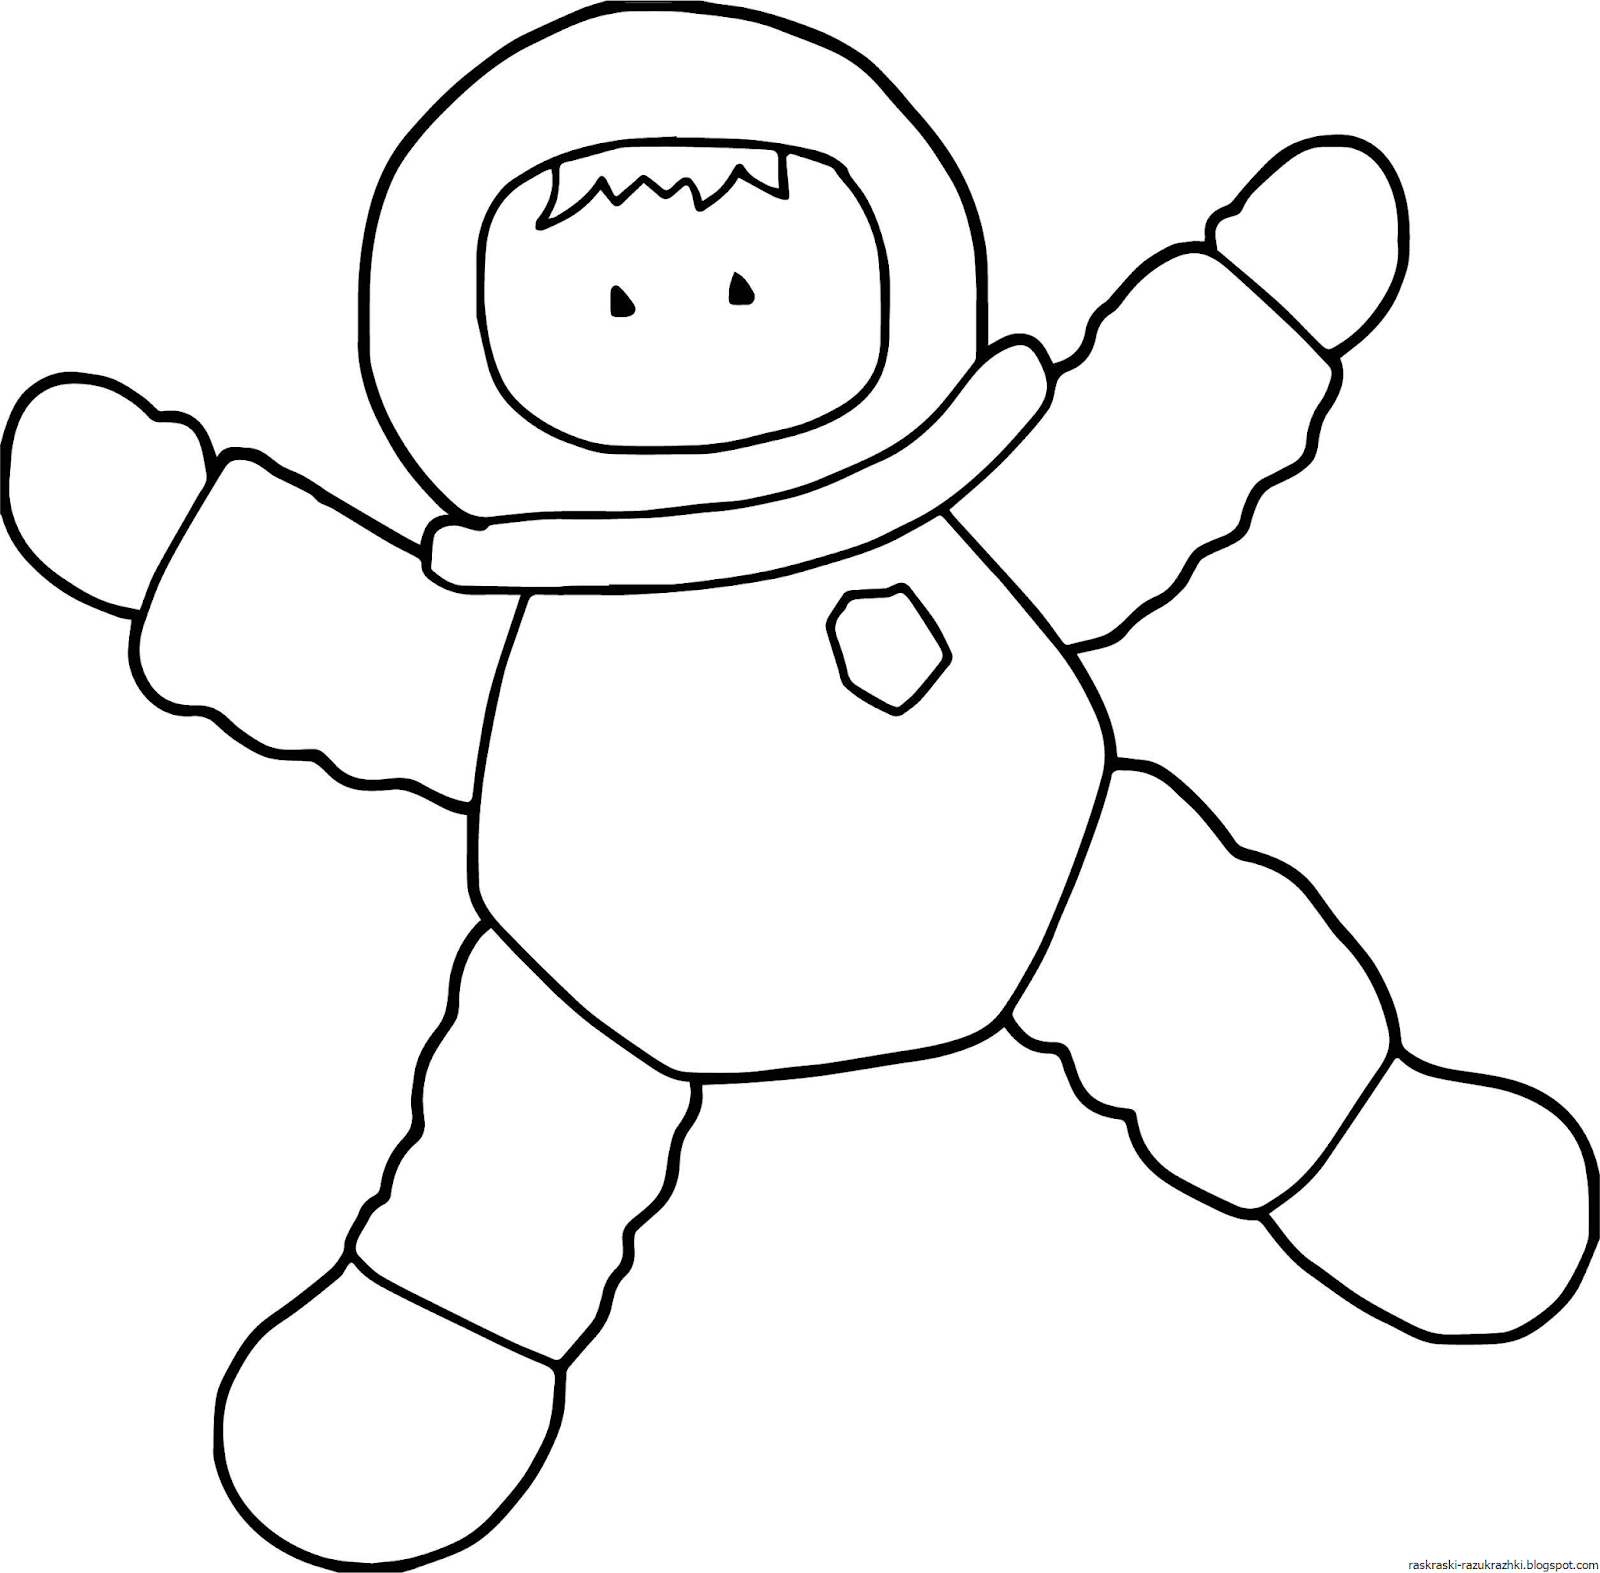 Шаблон космонавта для аппликации для детей. Космонавт раскраска для детей. Космонавт трафарет для детей. Космонавт картинка для детей раскраска. Космонавт раскраска для малышей.